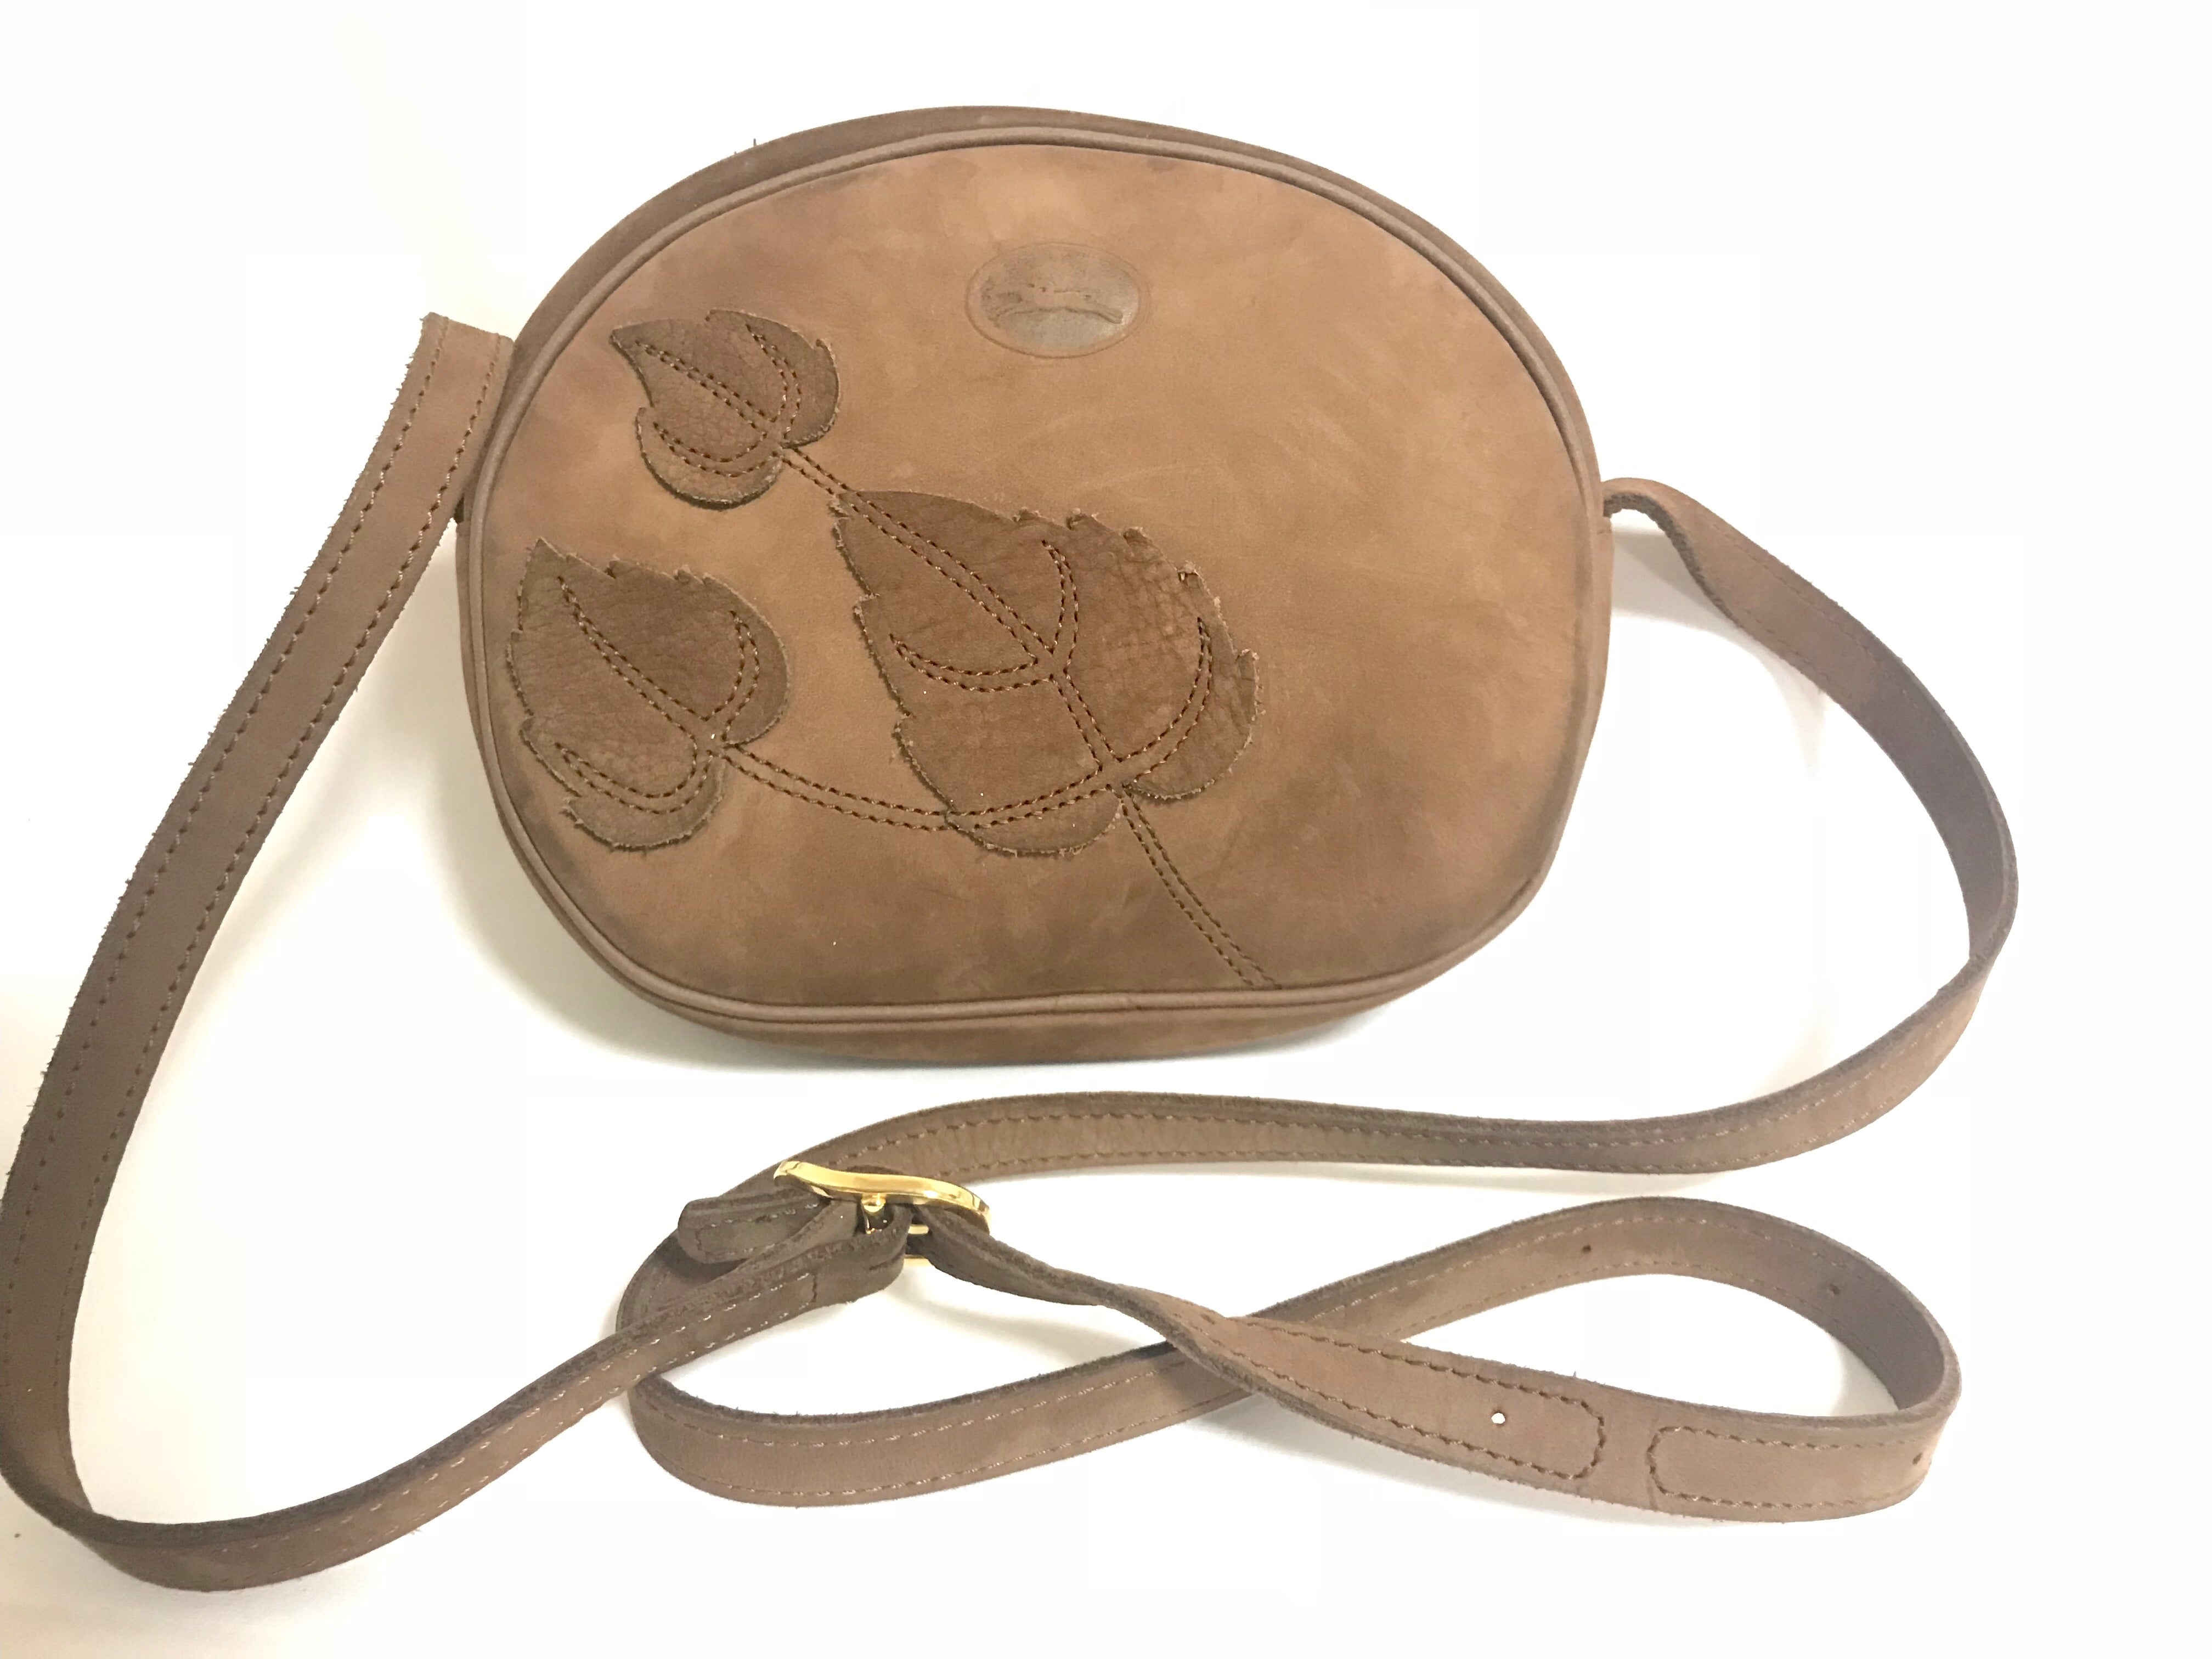 Vintage Longchamp brown suede leather oval round shape shoulder bag with leaf applique motifs. Rare and unique bag back in the okd era.